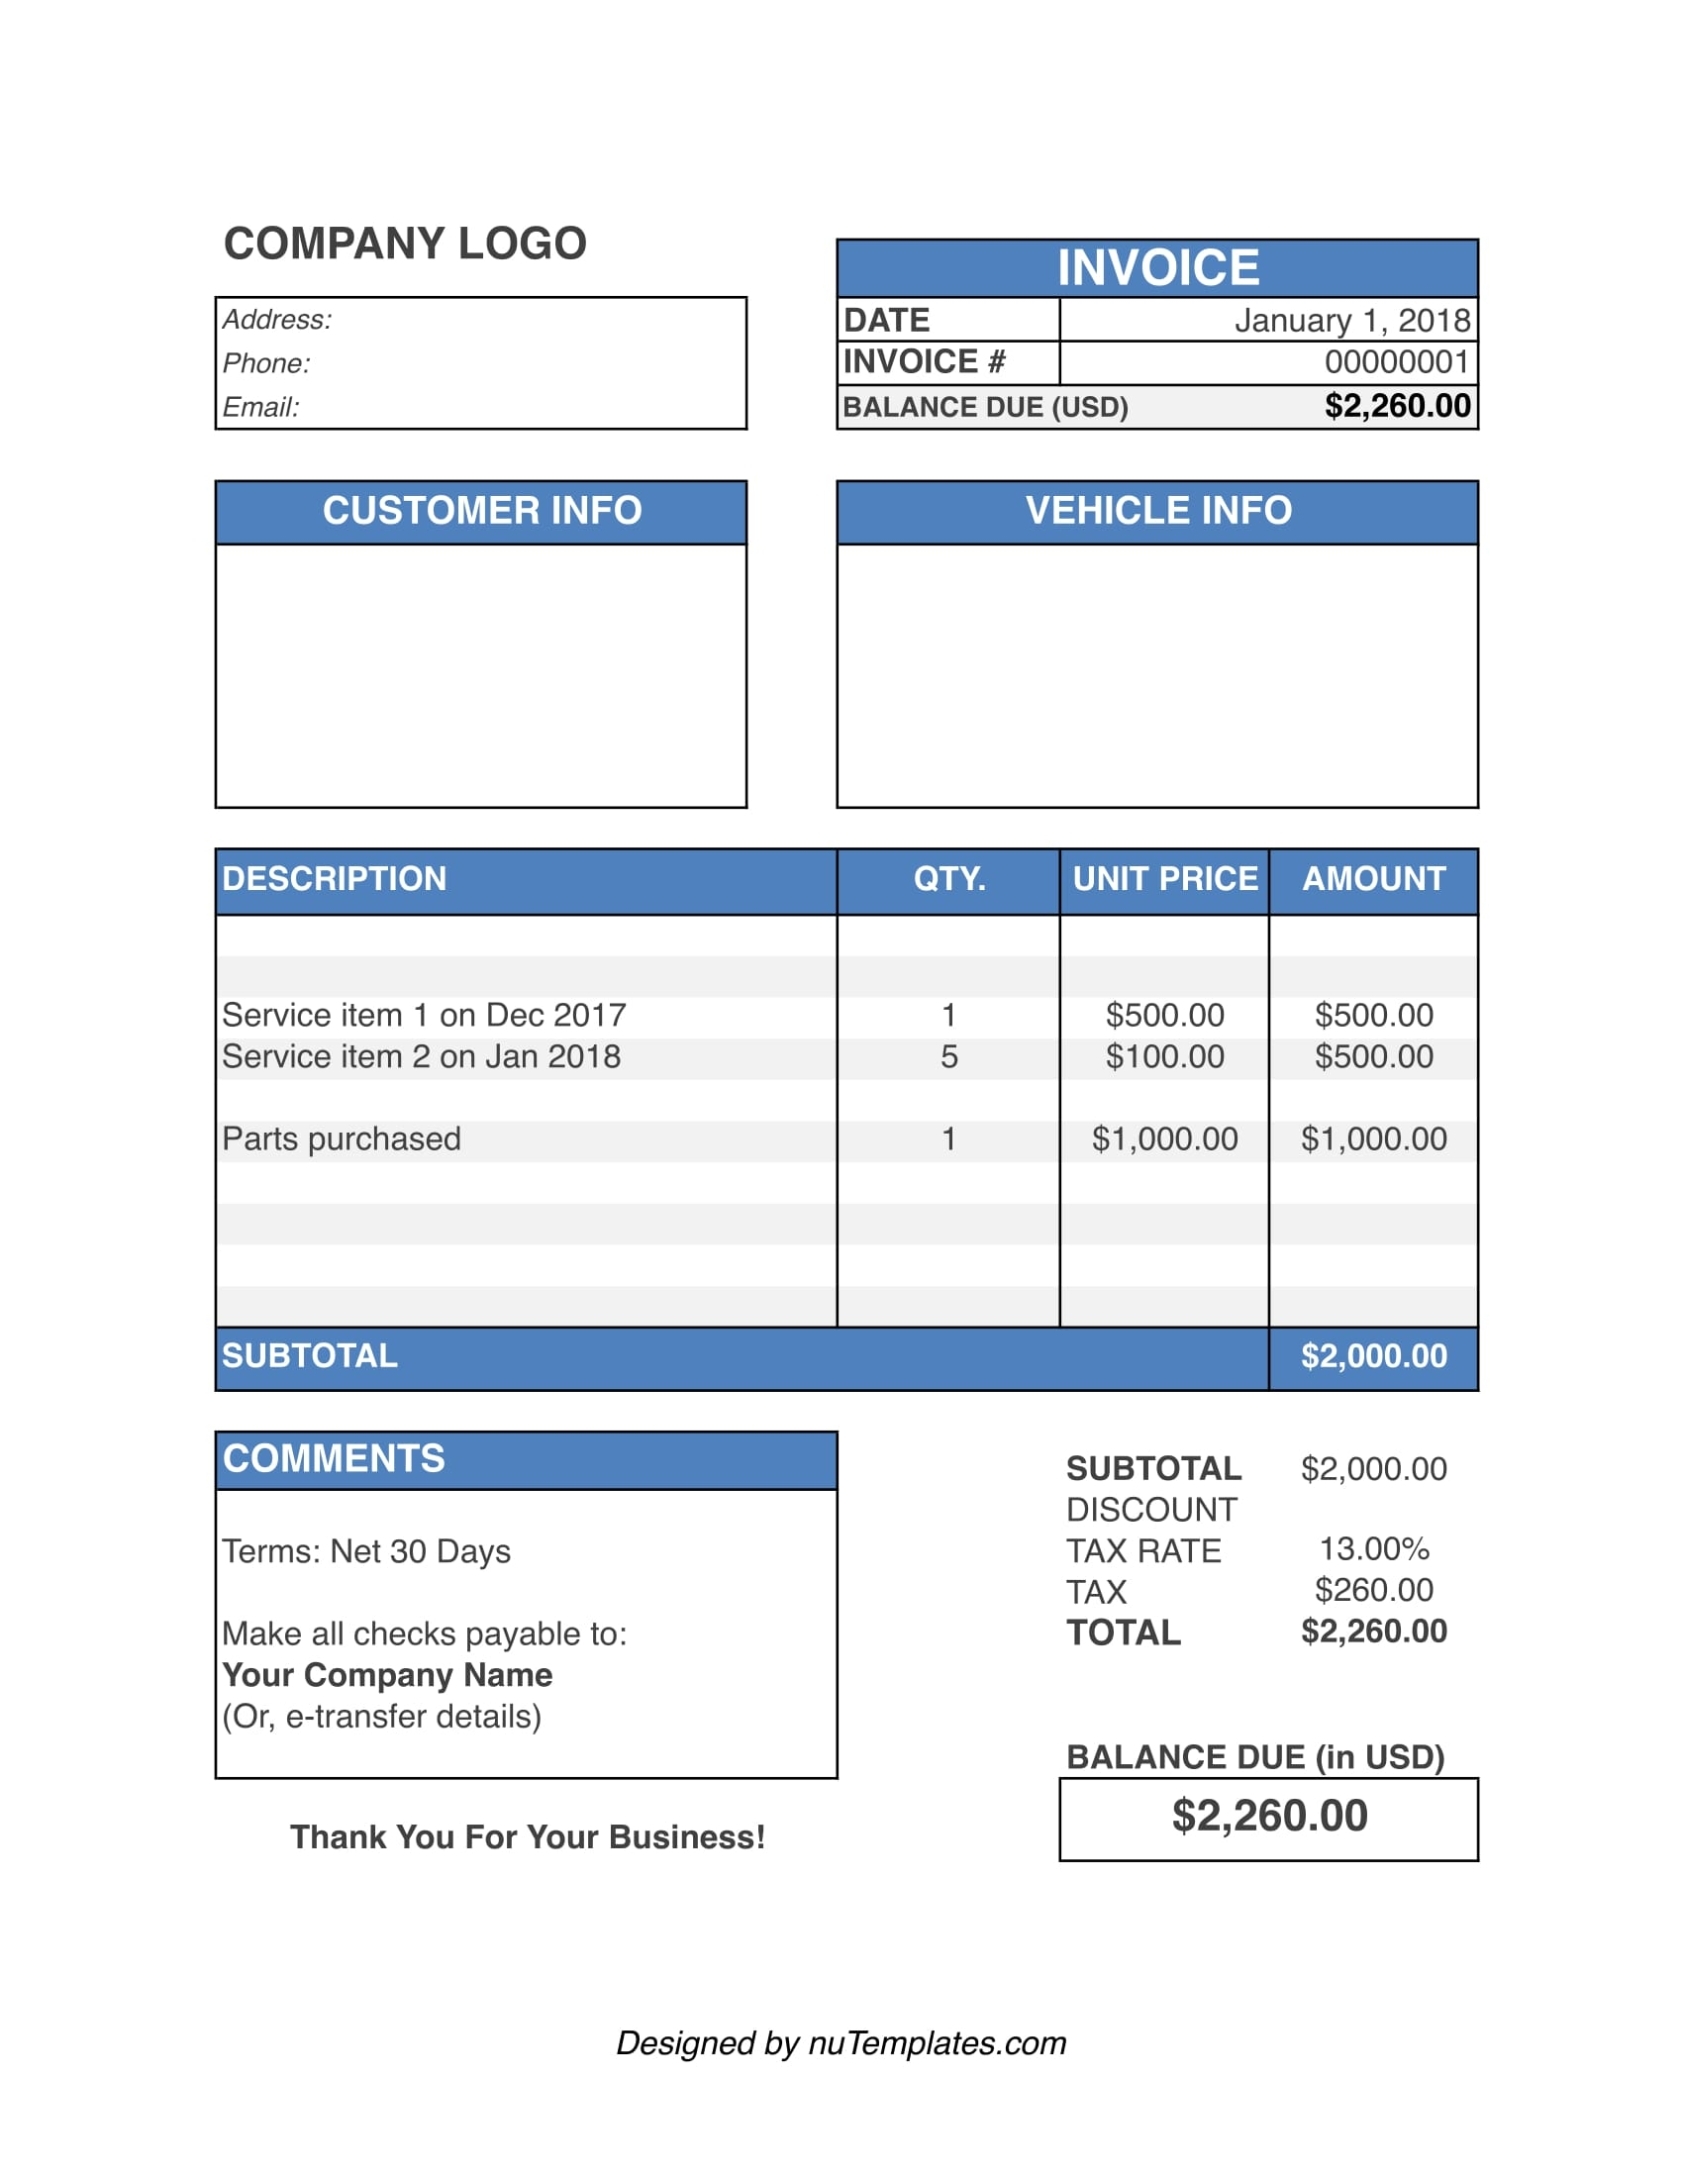 Auto Repair Invoice Template - Auto Repair Invoices | Nutemplates With Invoice Template For Work Done